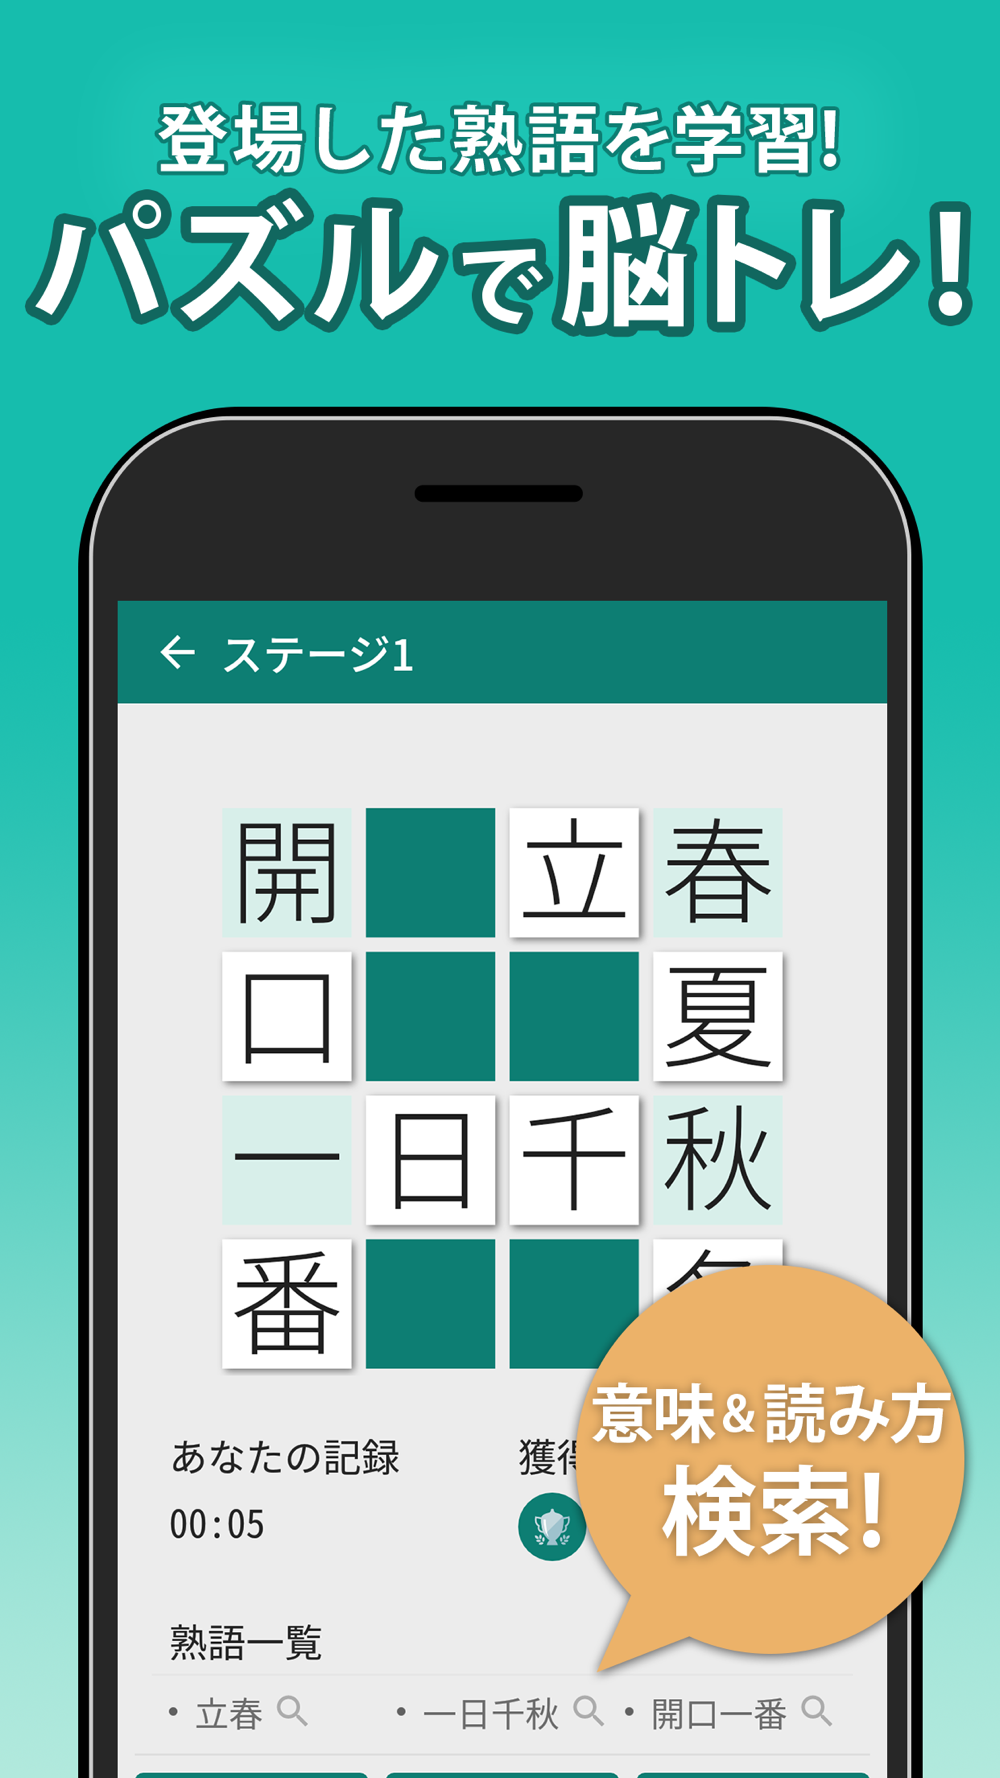 漢字クロスワードパズル Free Download App For Iphone Steprimo Com